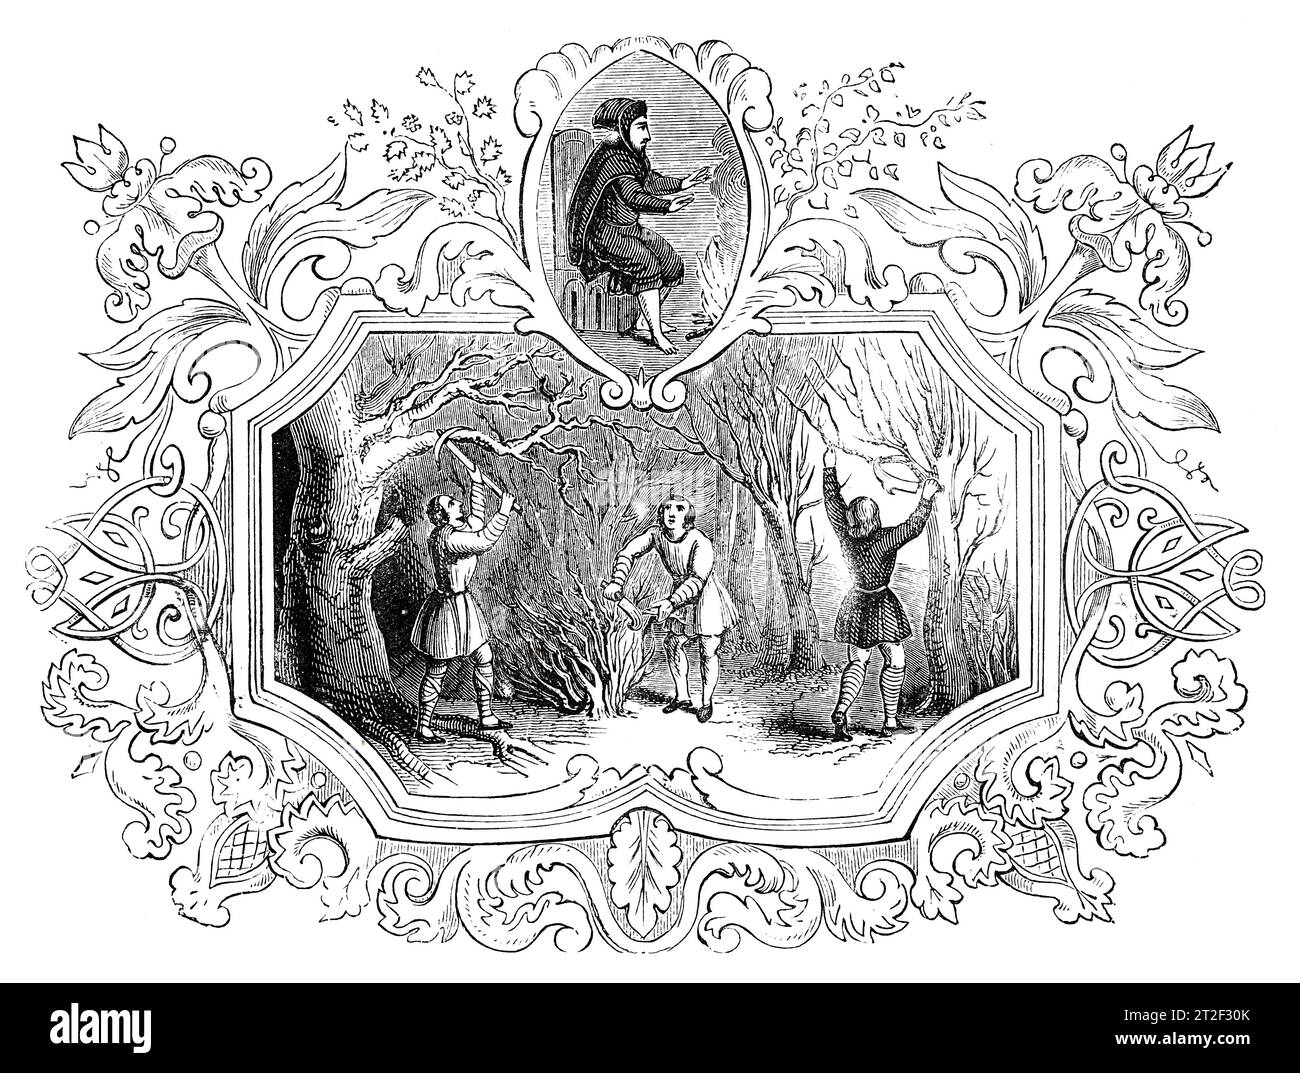 Emblemi sassoni del mese di febbraio. Black and White Illustration from the 'Old England' pubblicato da James Sangster nel 1860. Foto Stock